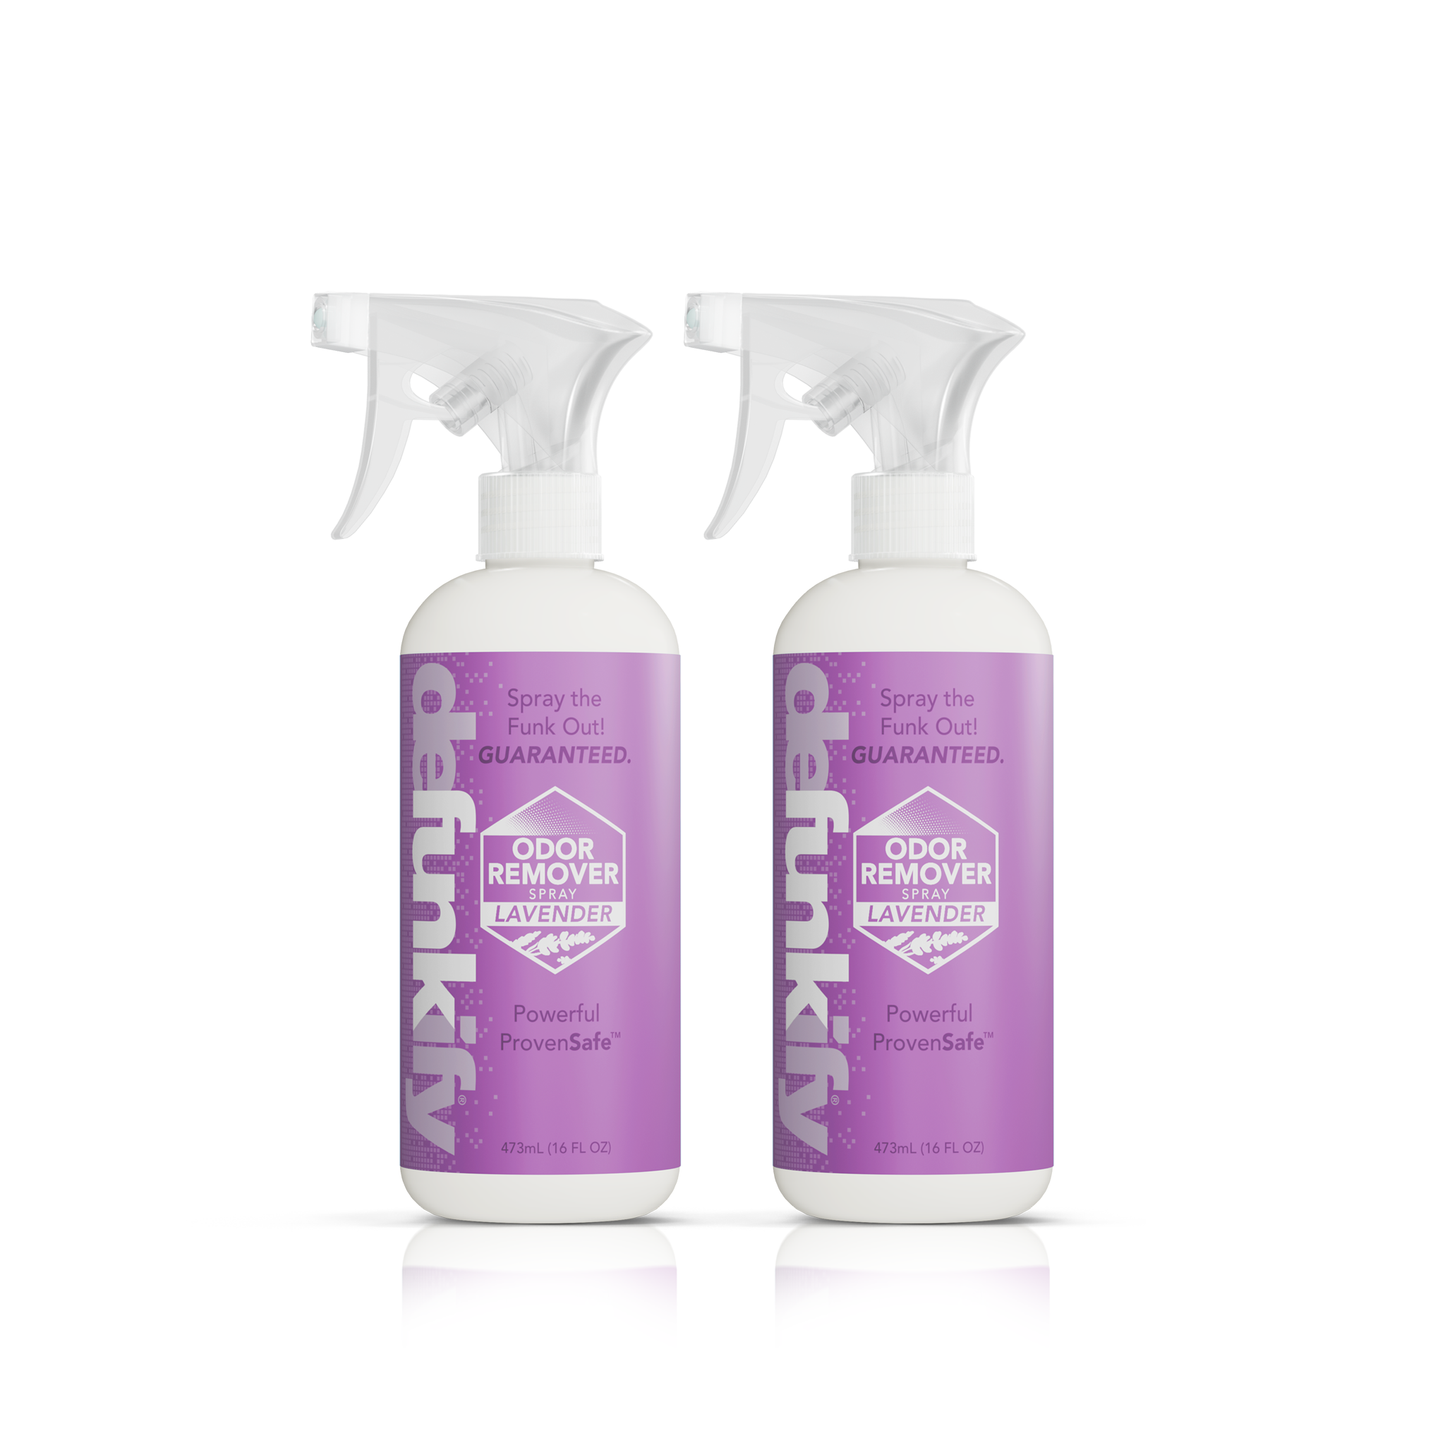 TeamUp Odor Remover Spray - Non-Toxic & Gear-Safe